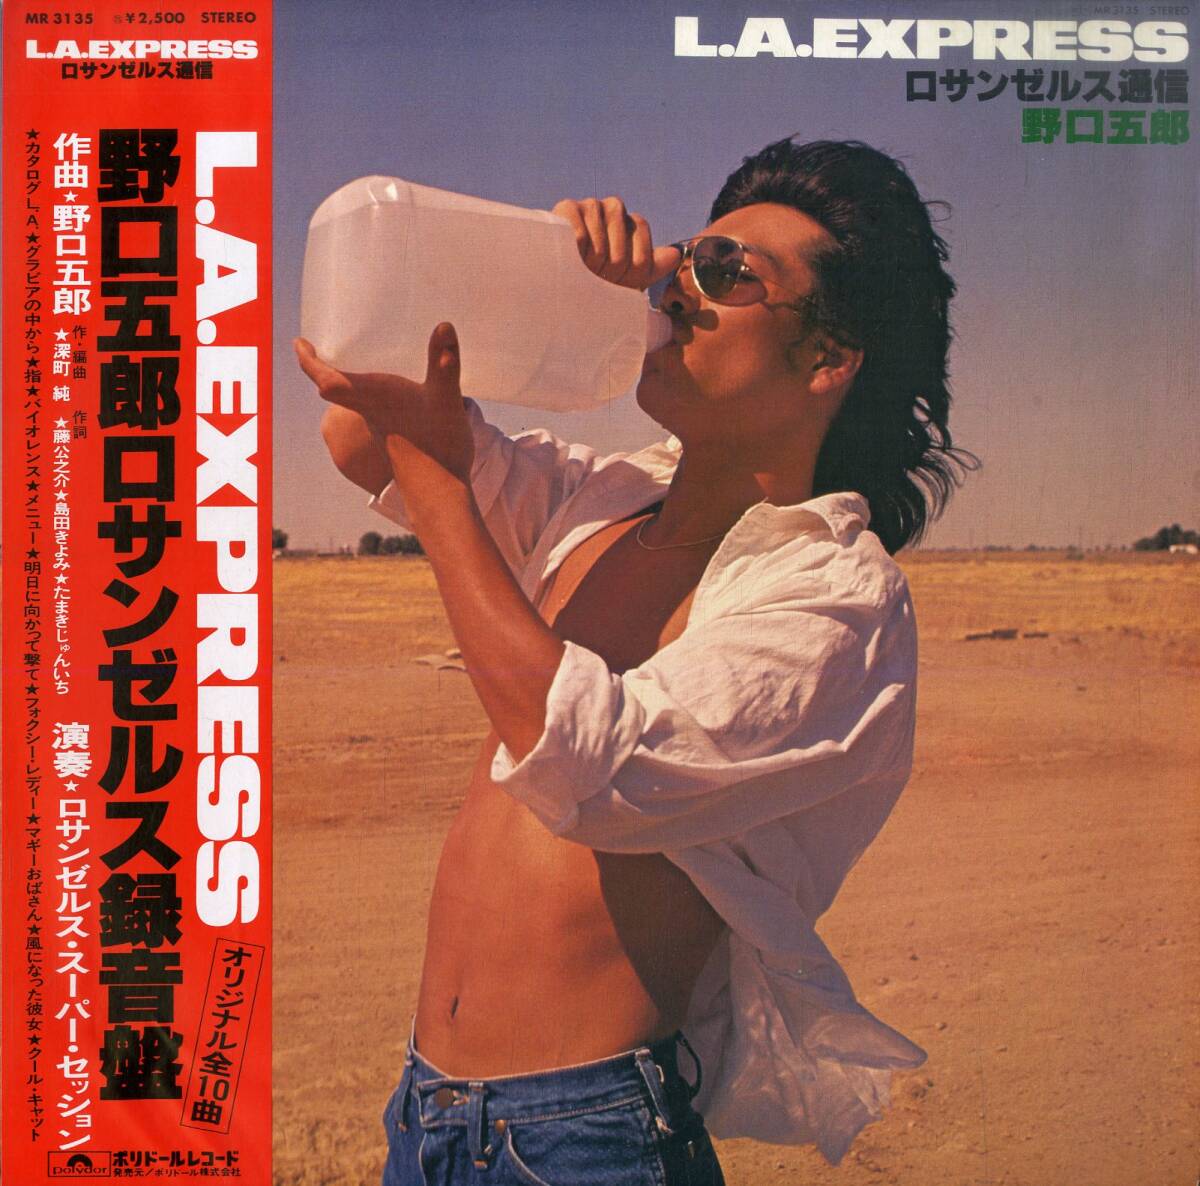 A00578160/LP/野口五郎「L.A. Express ロサンゼルス通信 (1978年・MR-3135・ジャズファンク・ライトメロウ)」_画像1